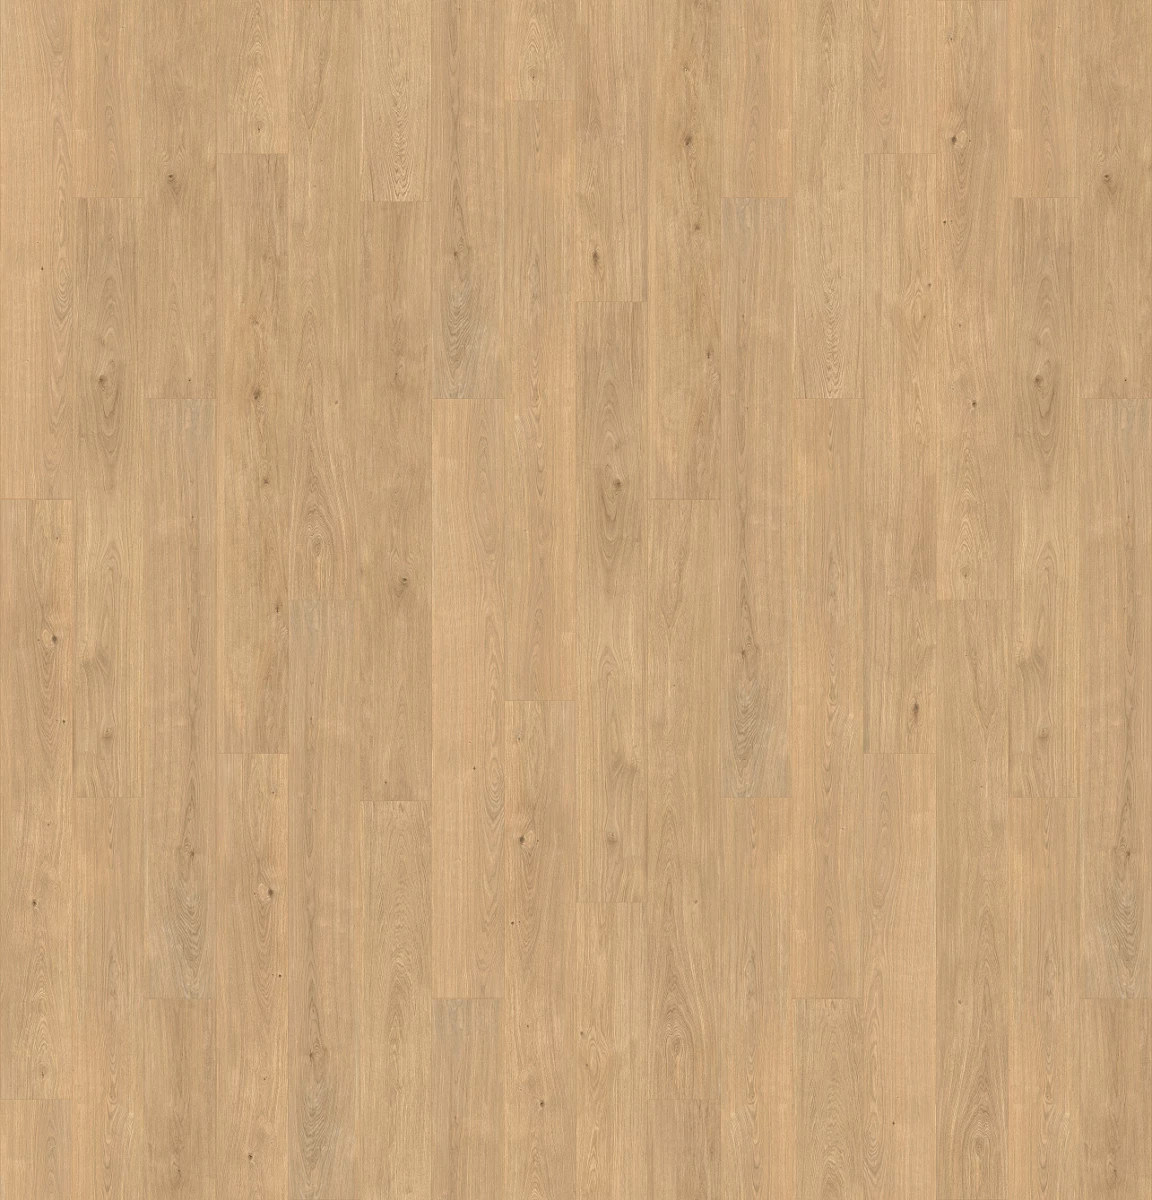 Texture de revêtement de sol en vinyle imitation bois authentique couleur bois élégant